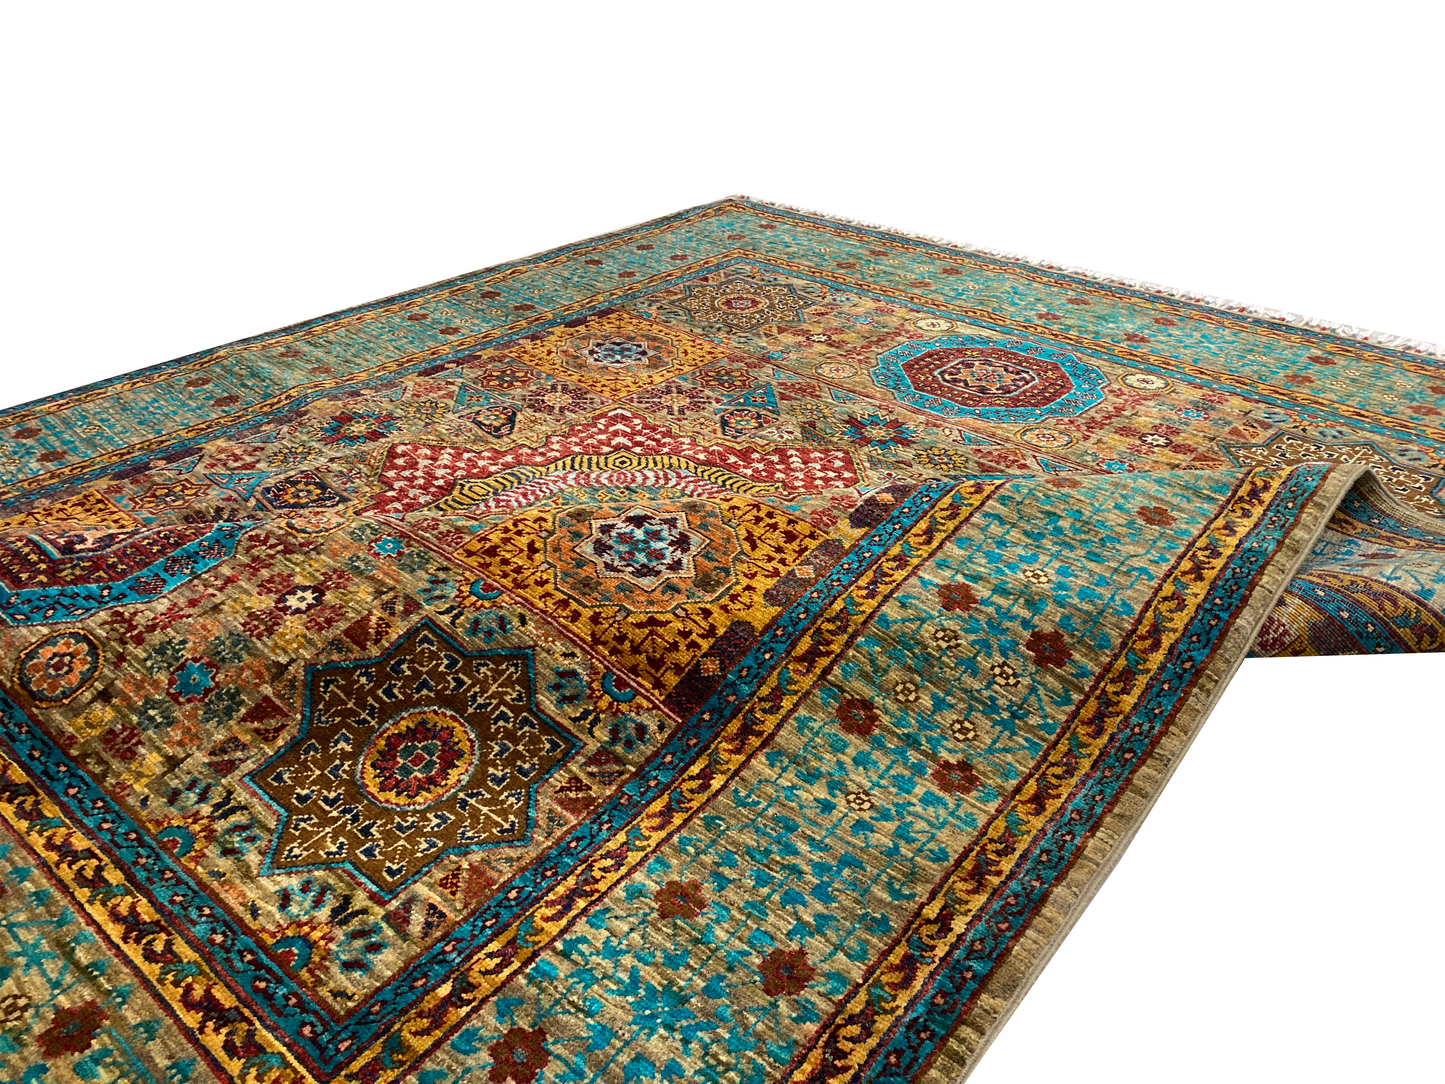 %100 Handmade Mamluk Carpet 193 x 154 cm